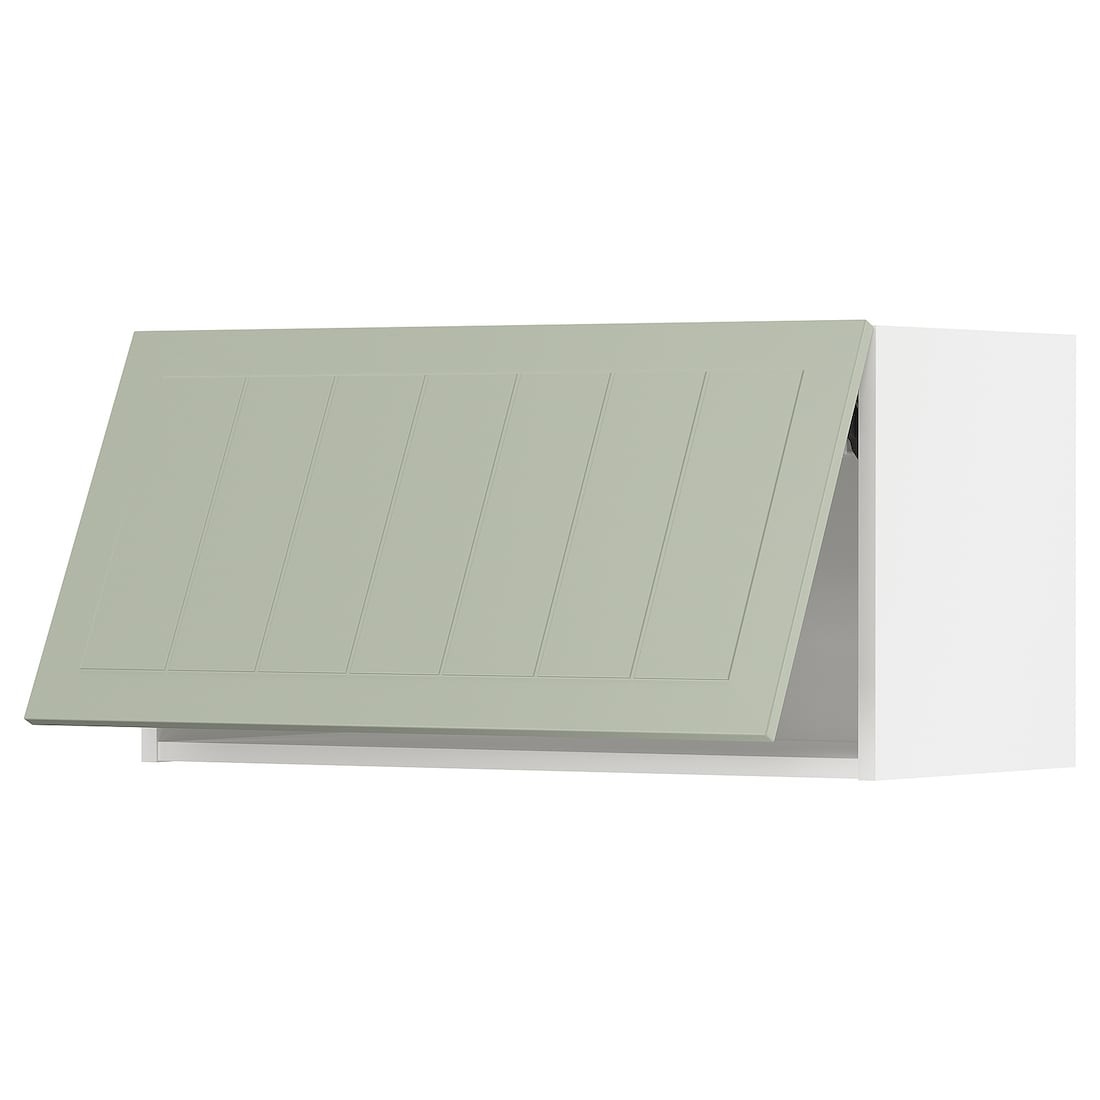 METOD МЕТОД Навесной горизонтальный шкаф, белый / Stensund светло-зеленый, 80x40 см